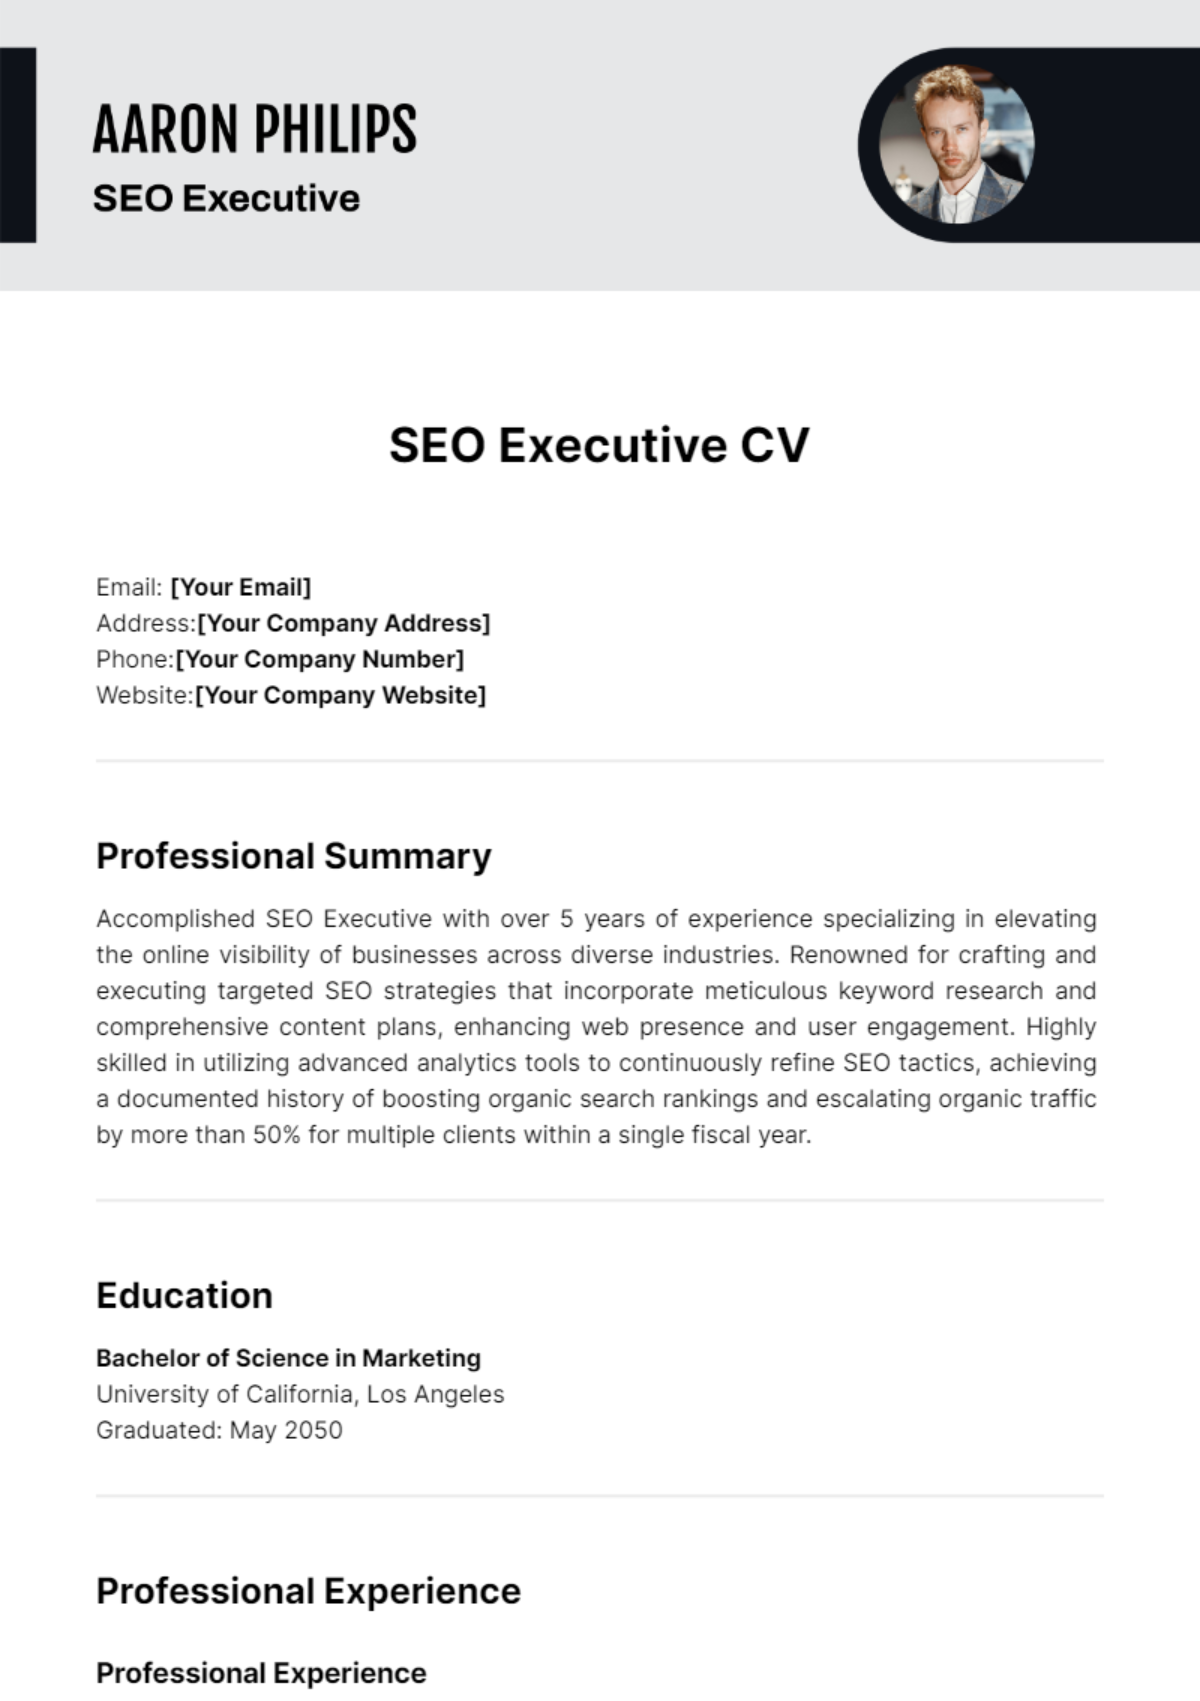 SEO Executive CV Template